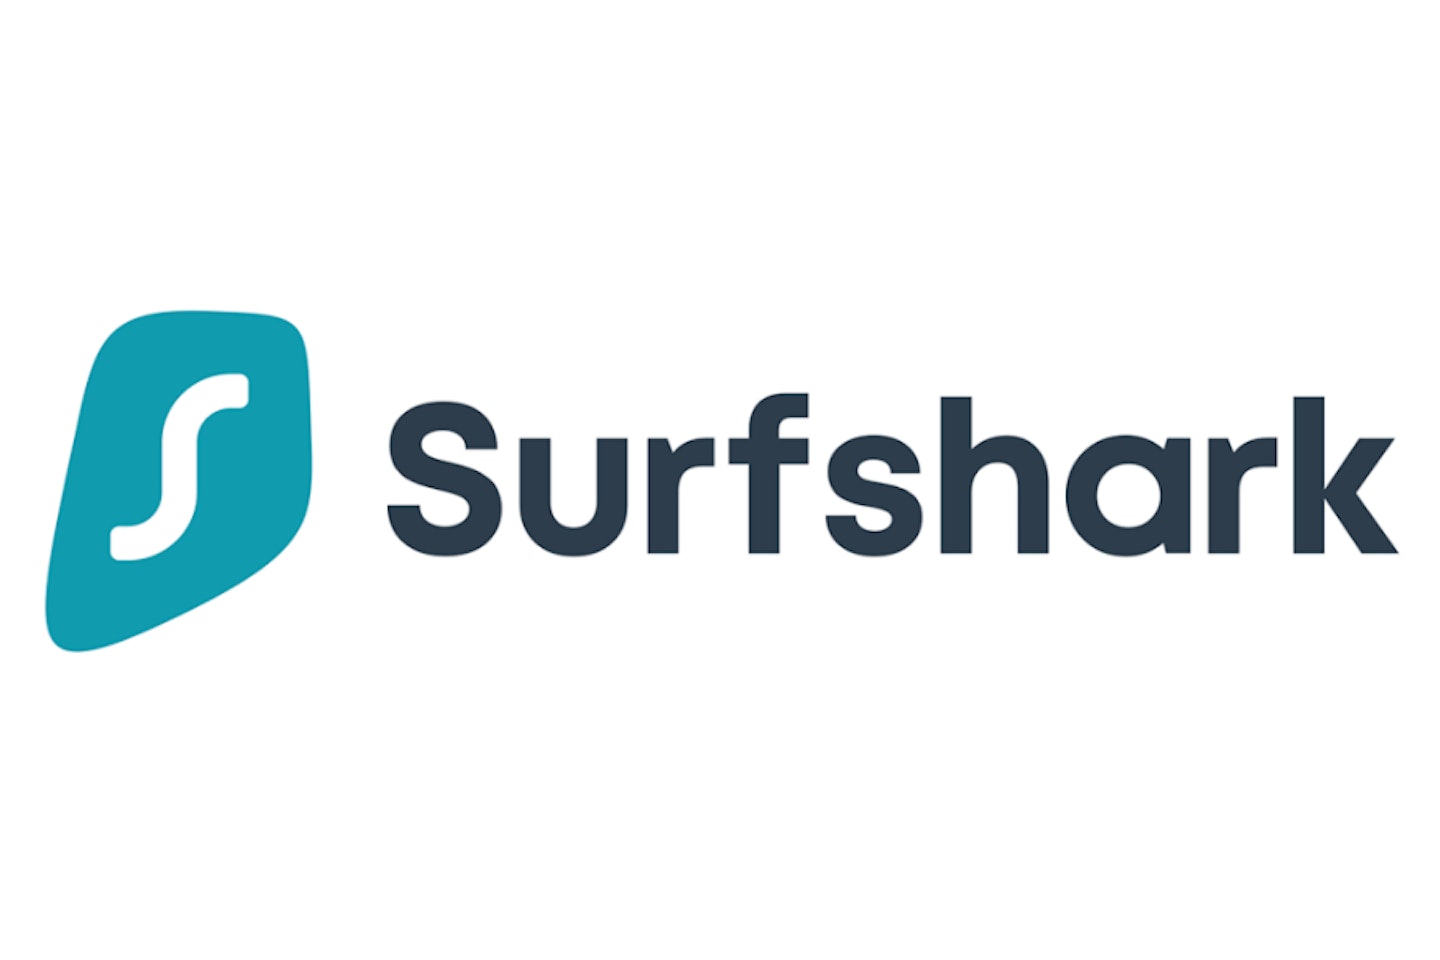 Surfshark logo